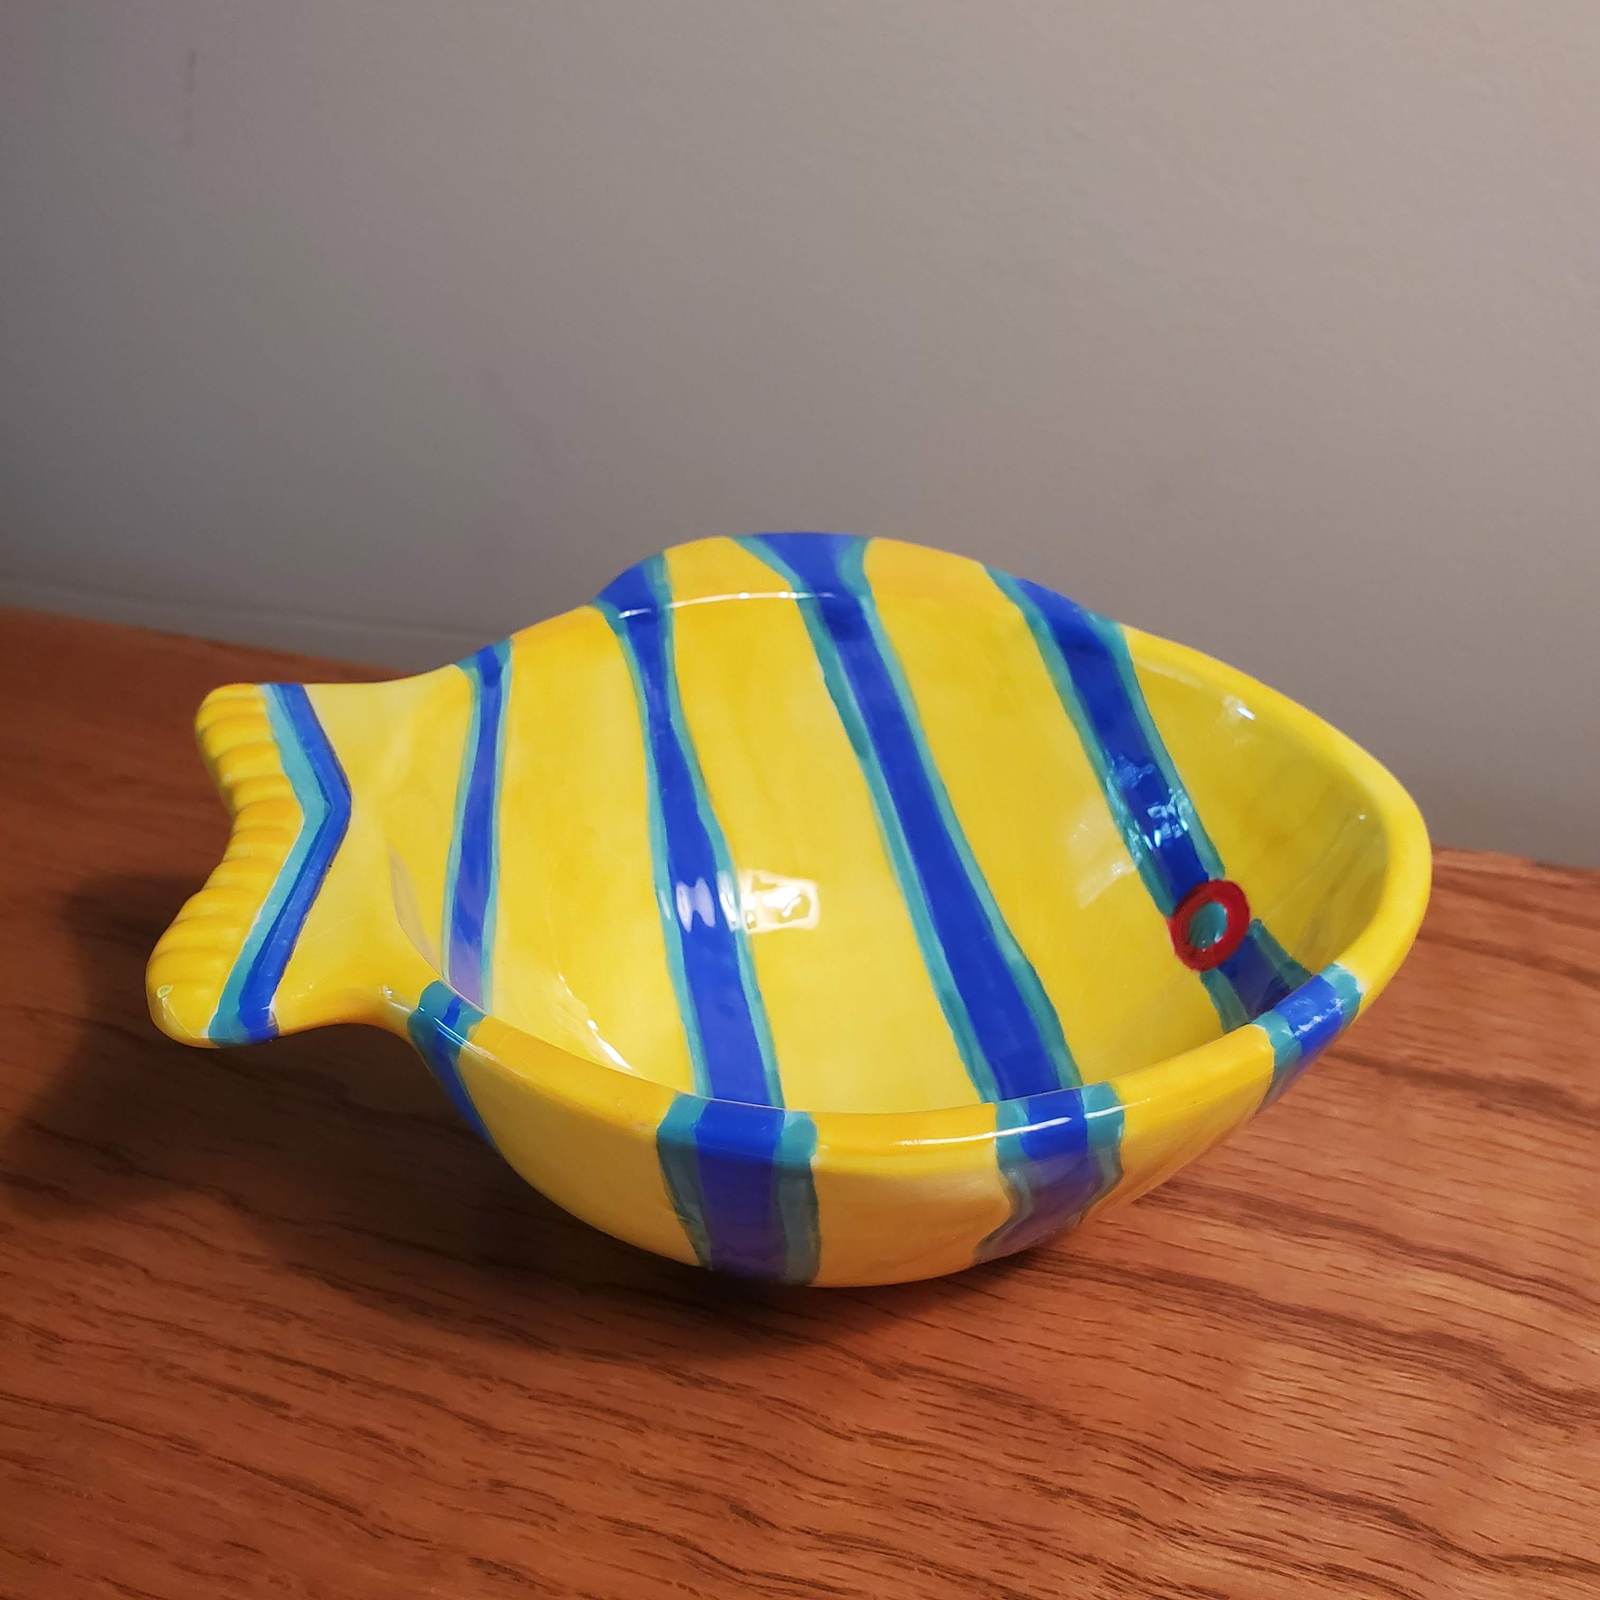 Fish shaped bowl